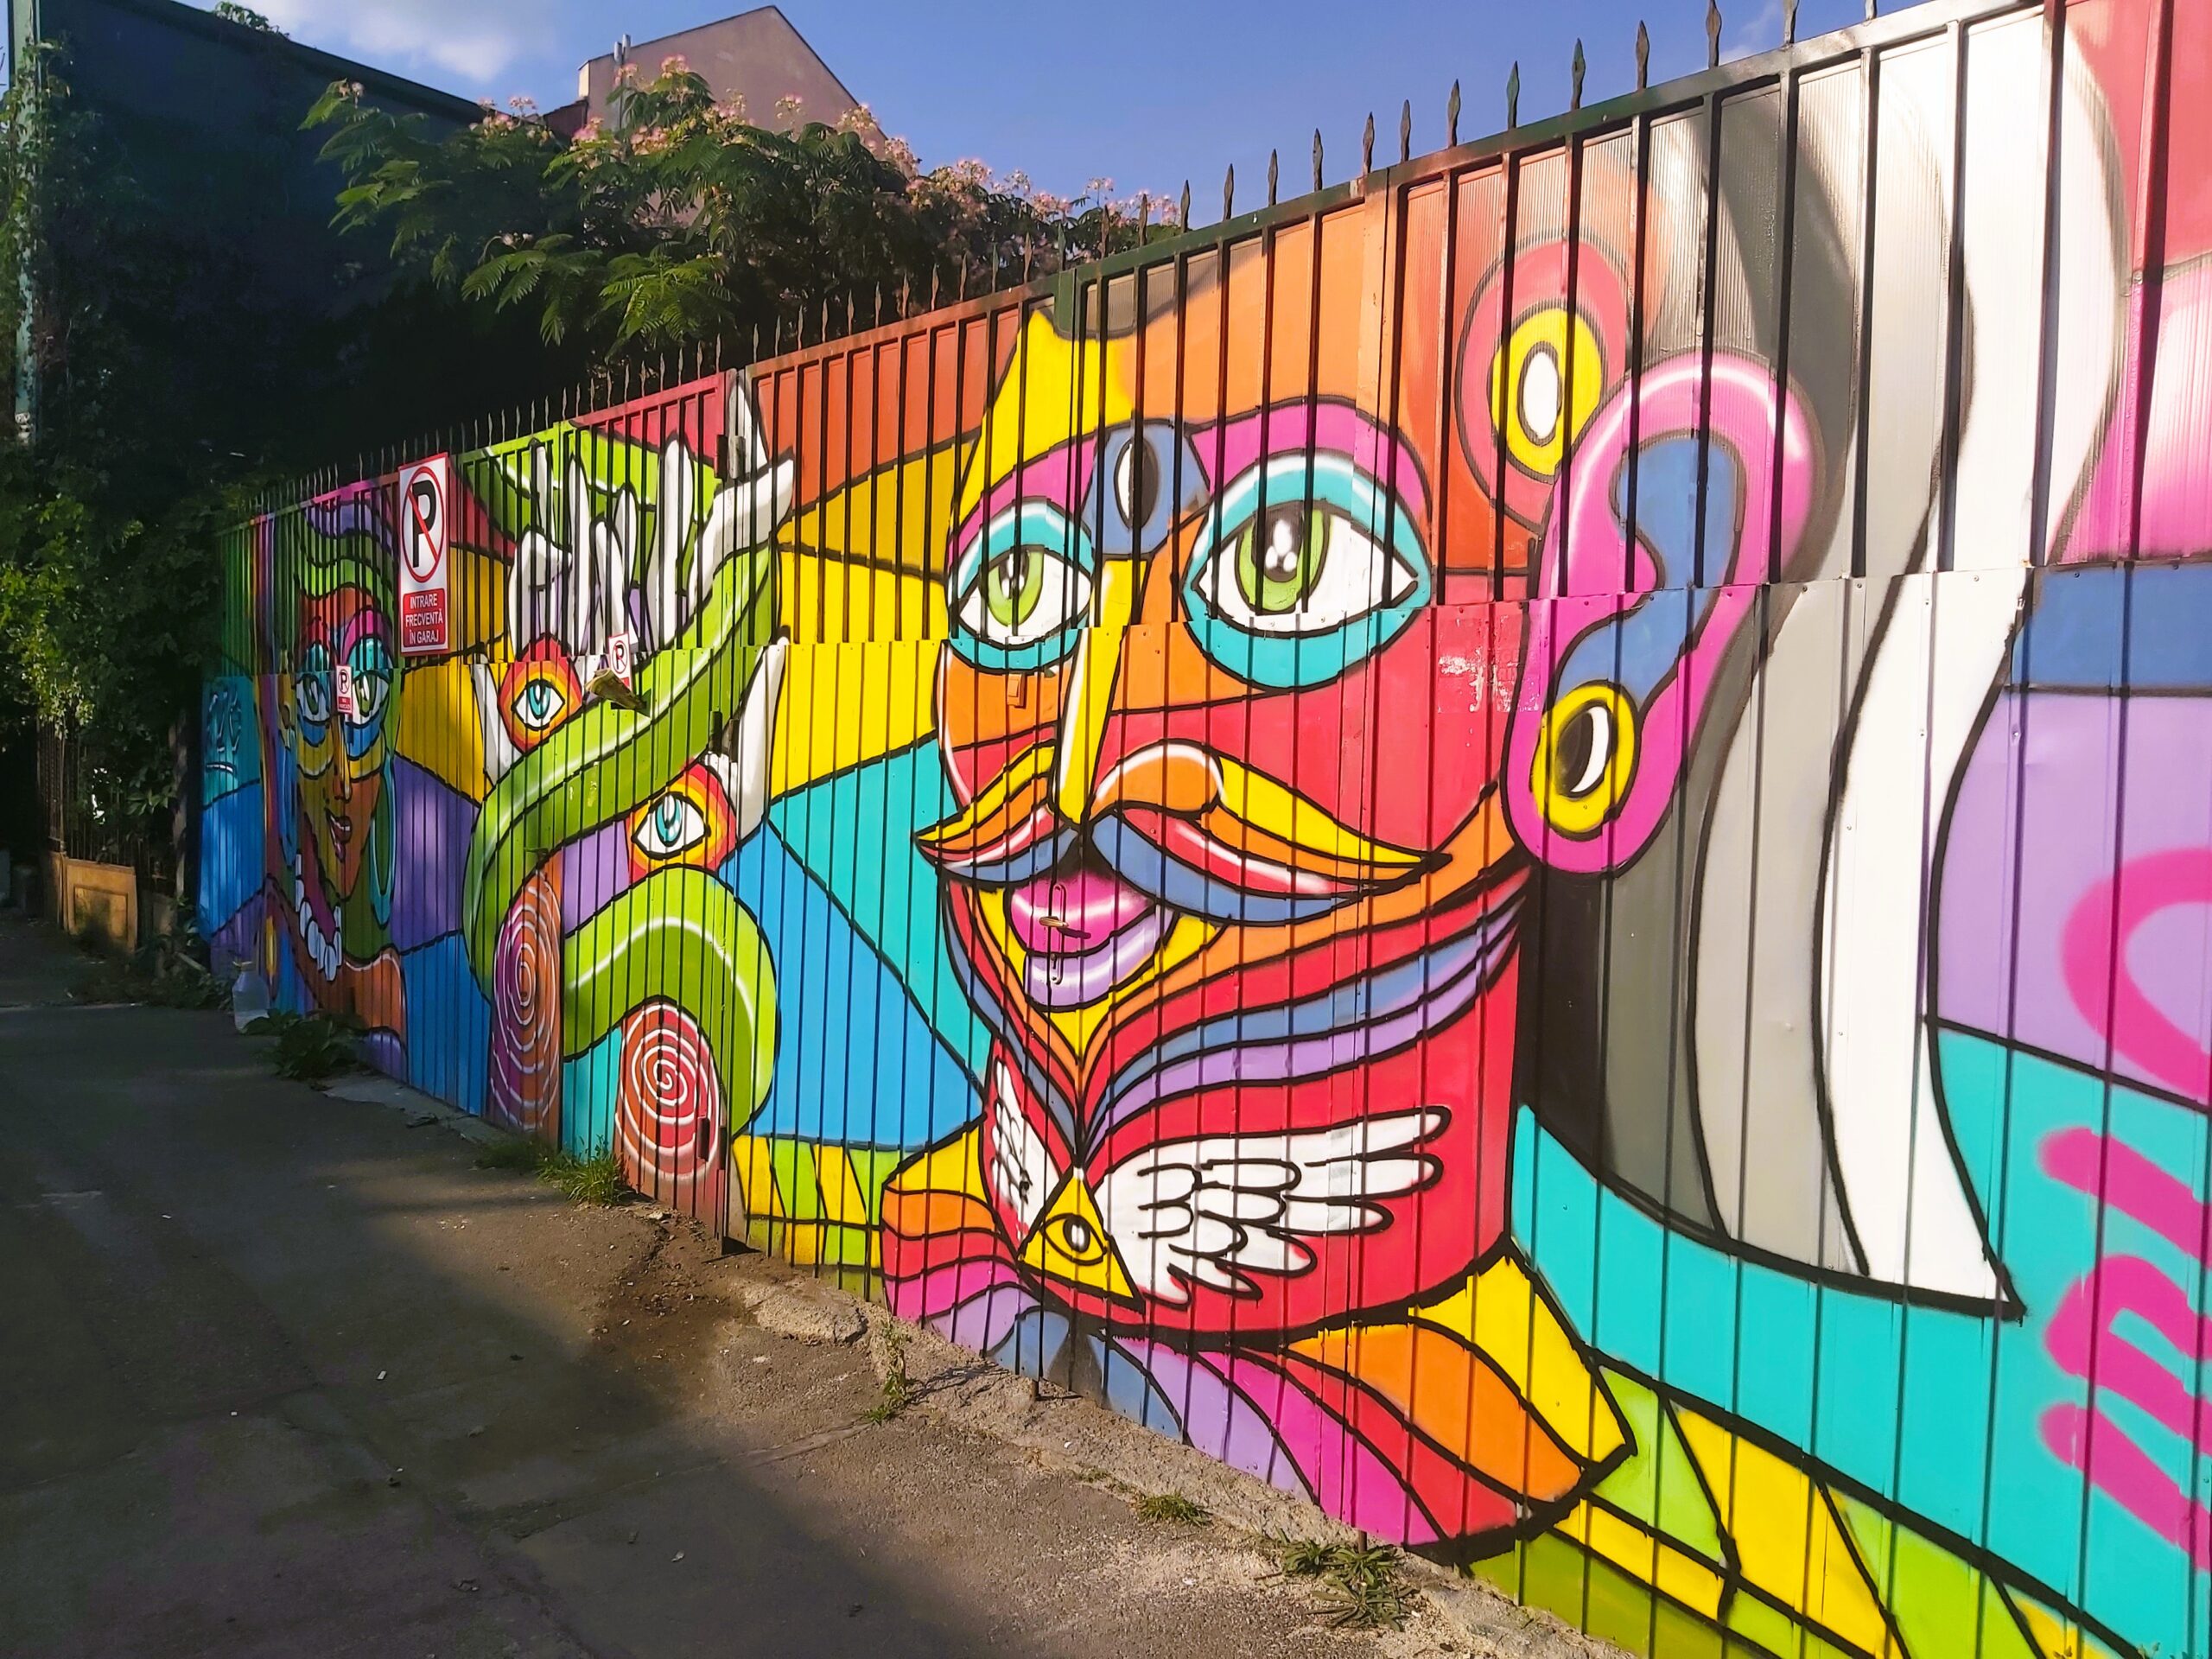 A colourful graffiti picture of a man in București, Romania